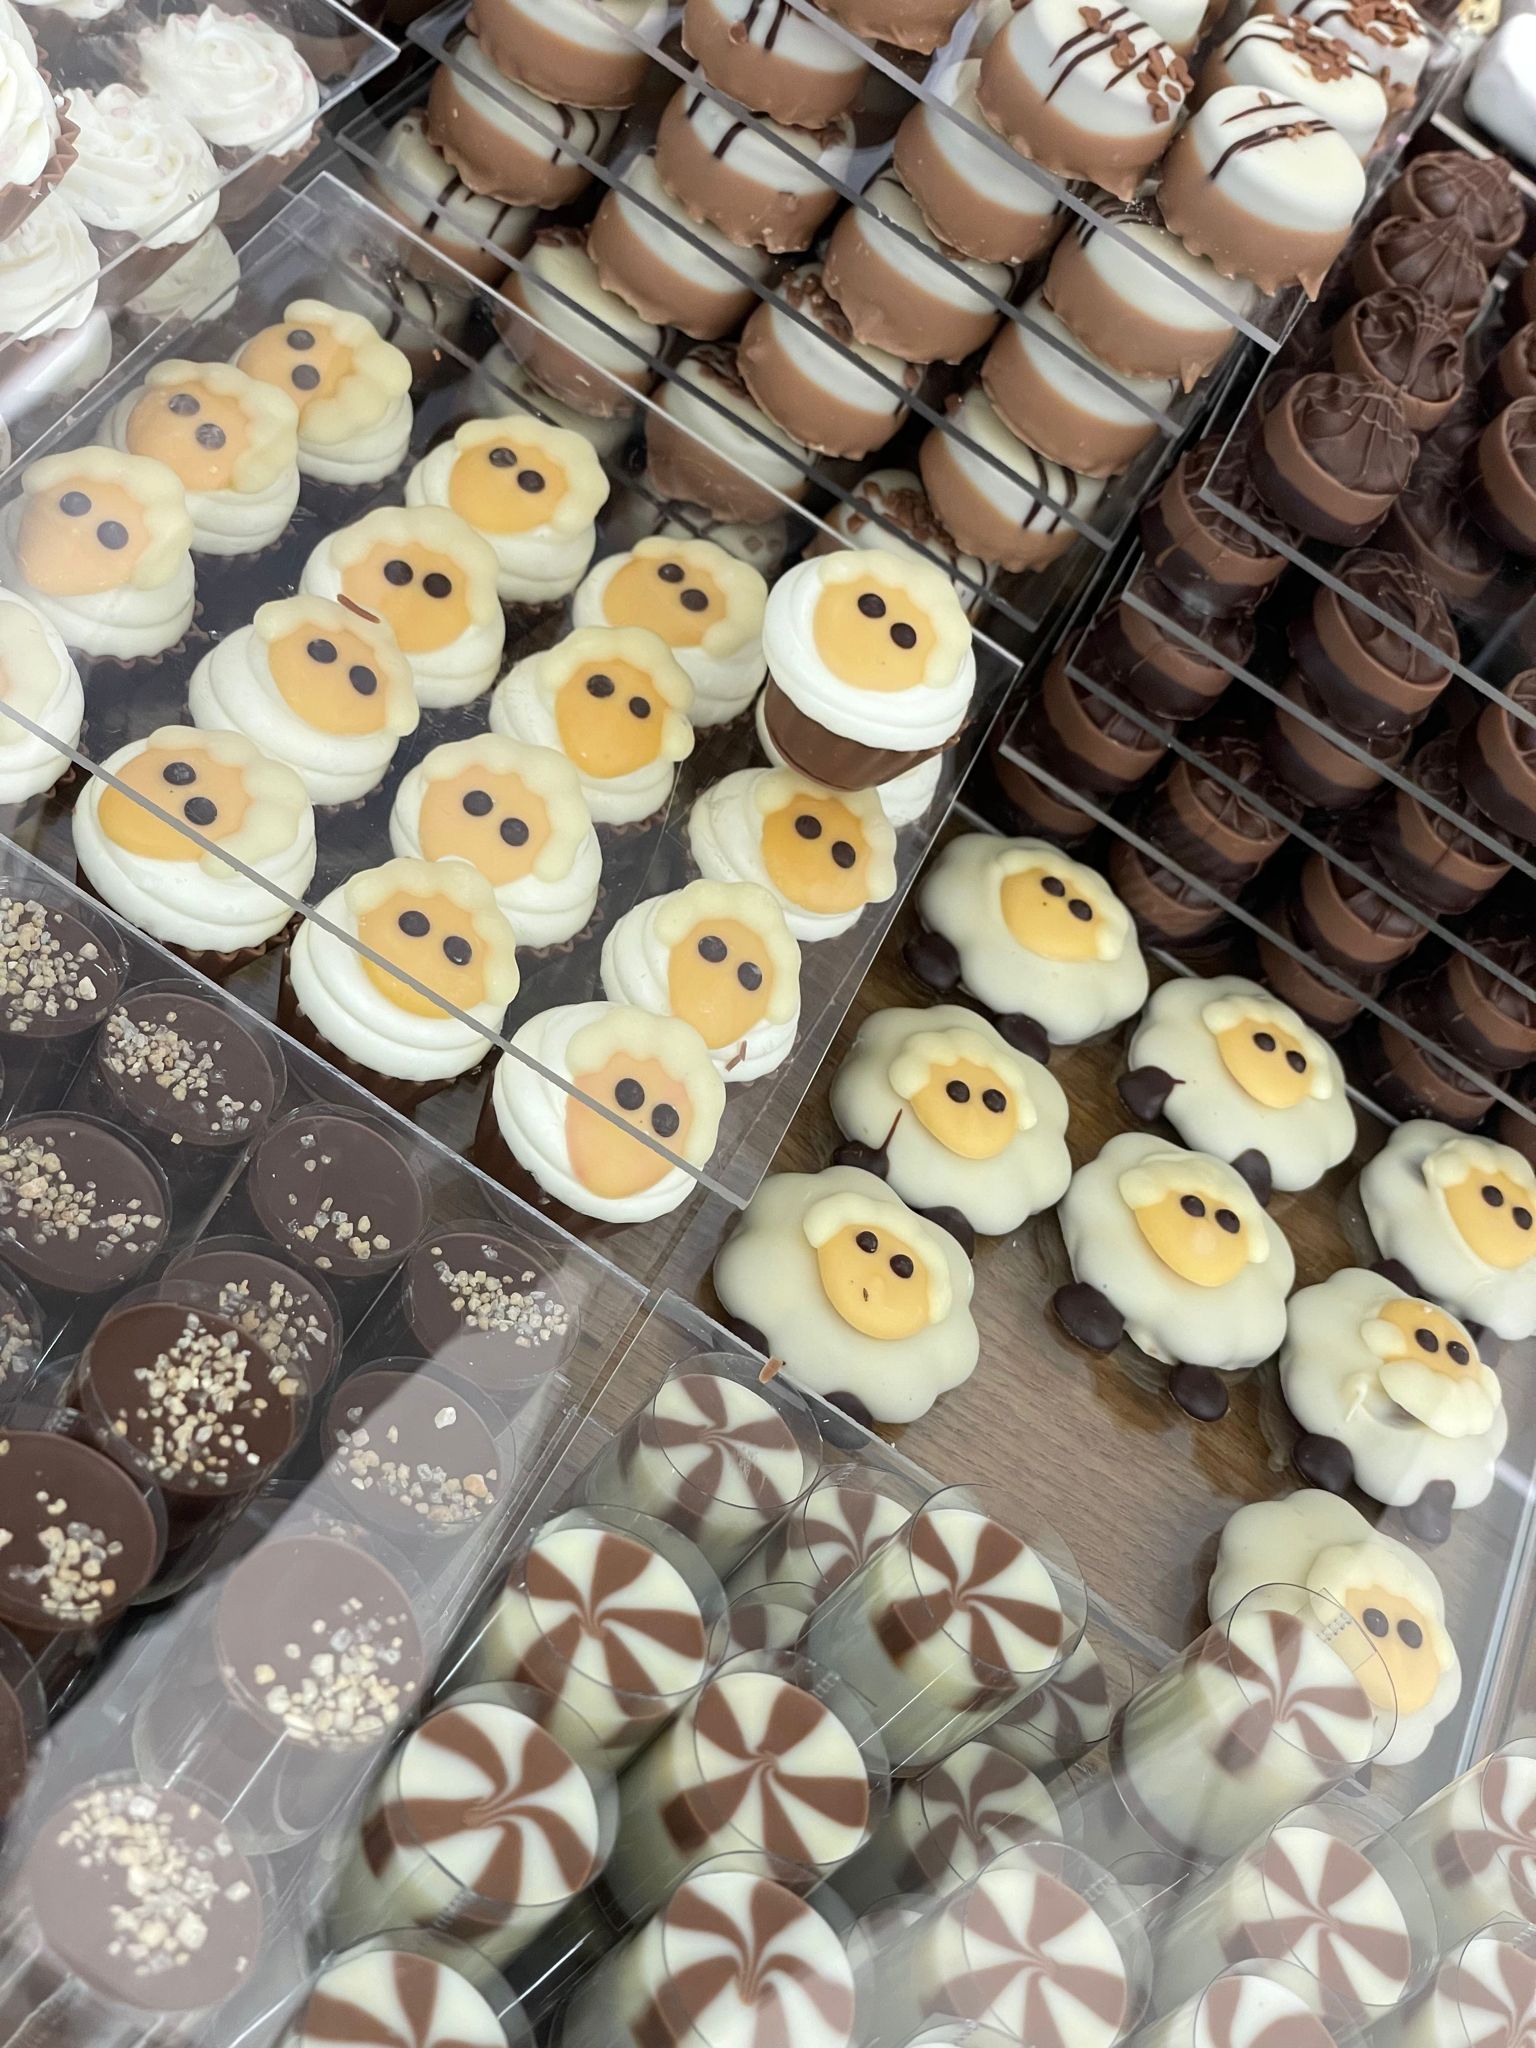 يافا: العيد أجمل مع سويت رياليتي .. أشهى حلويات وشكولاتات العيد بانتظاركم